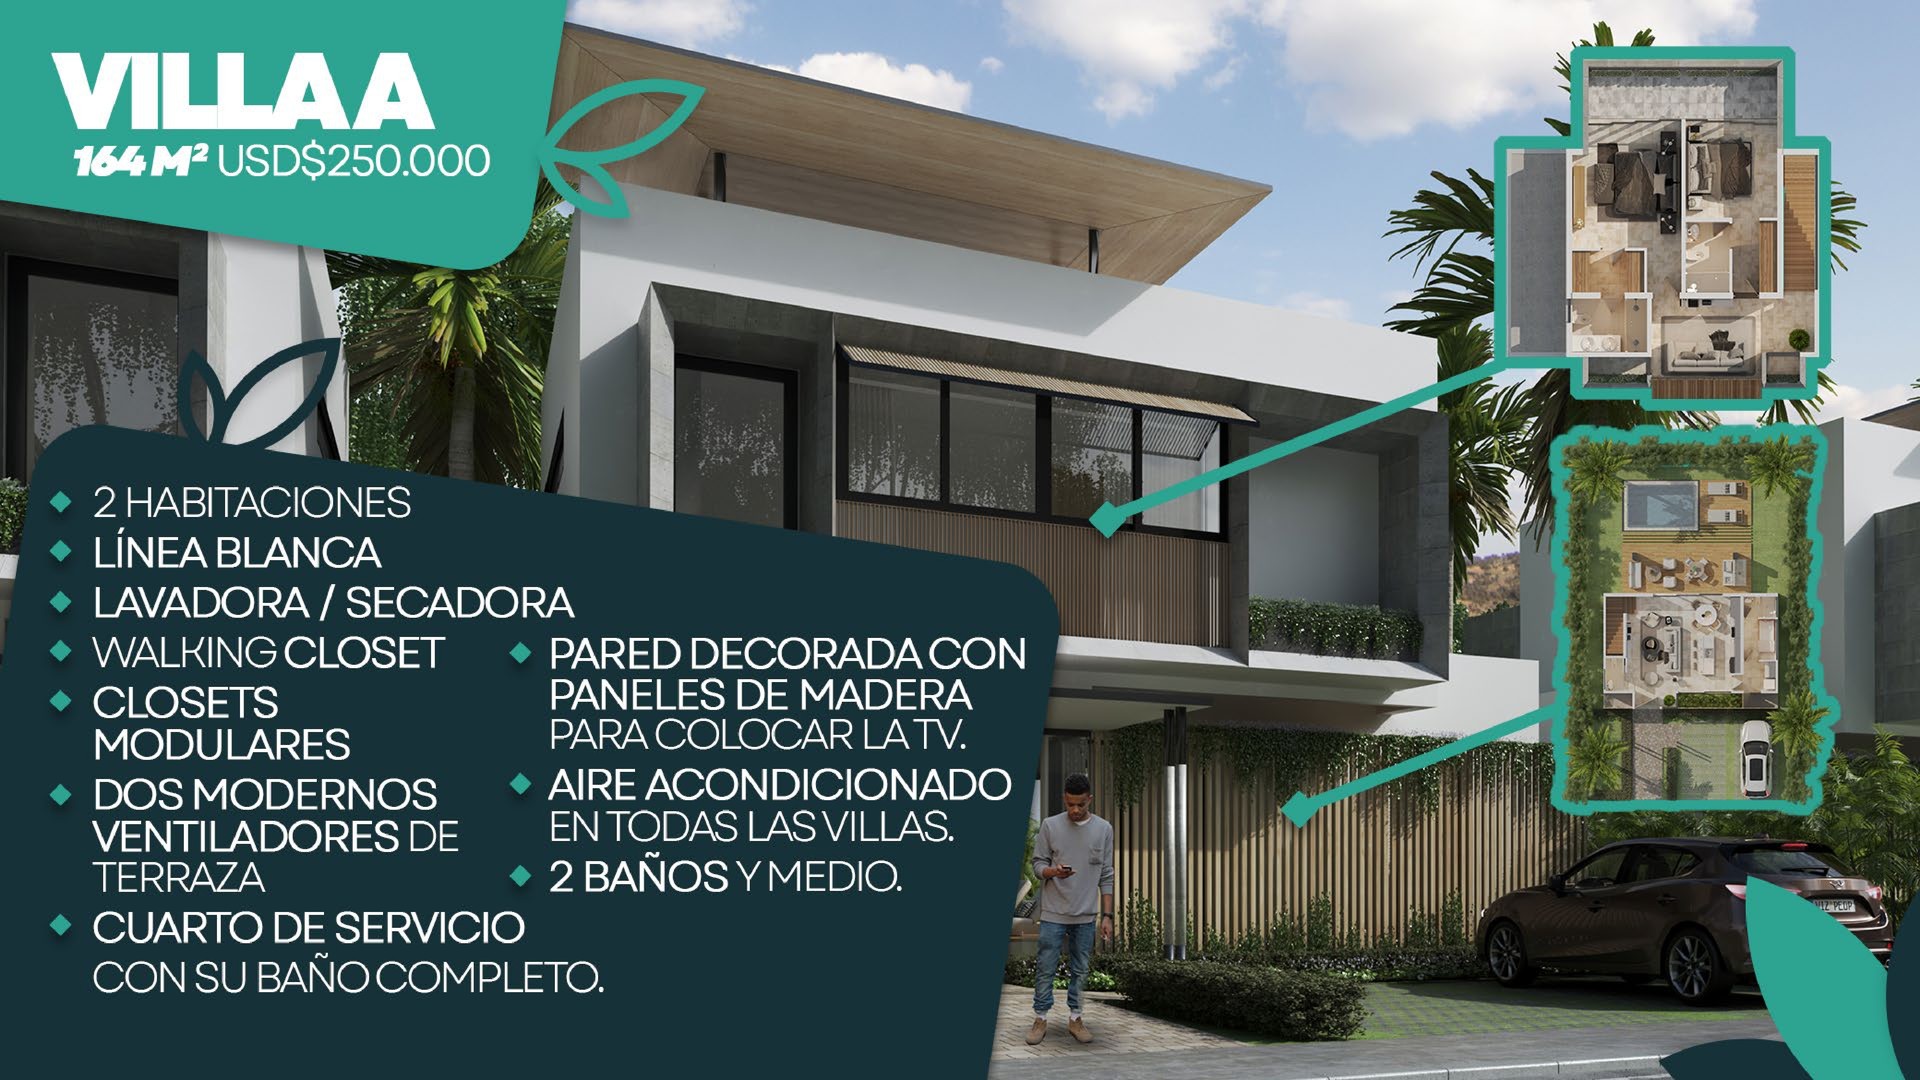 casas vacacionales y villas - Hermoso Proyecto en construccion en Punta Cana, Villas de 2 y 3 hab, amobladas.  1